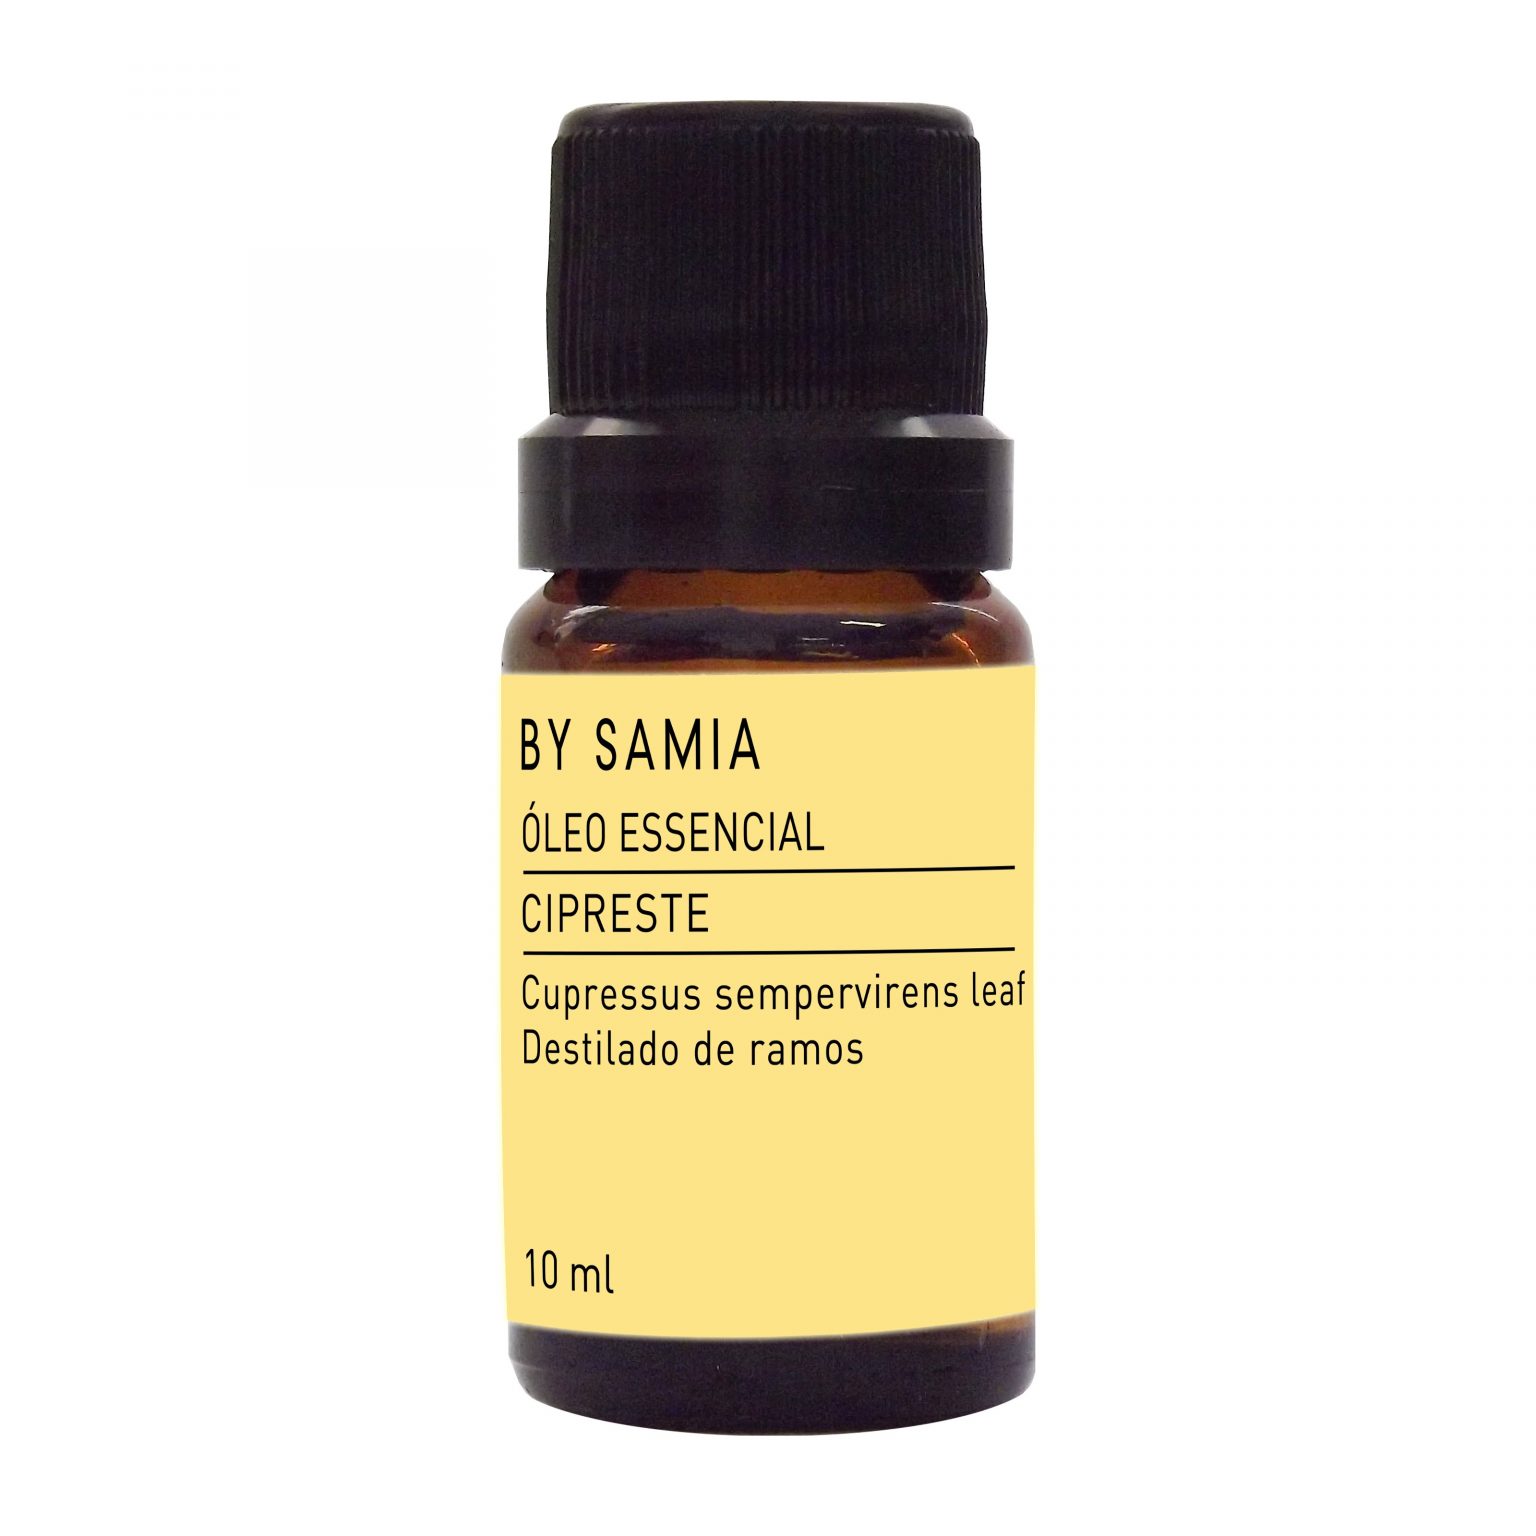 Oleo Essencial CIPRESTE 10ml by samia – BeOm